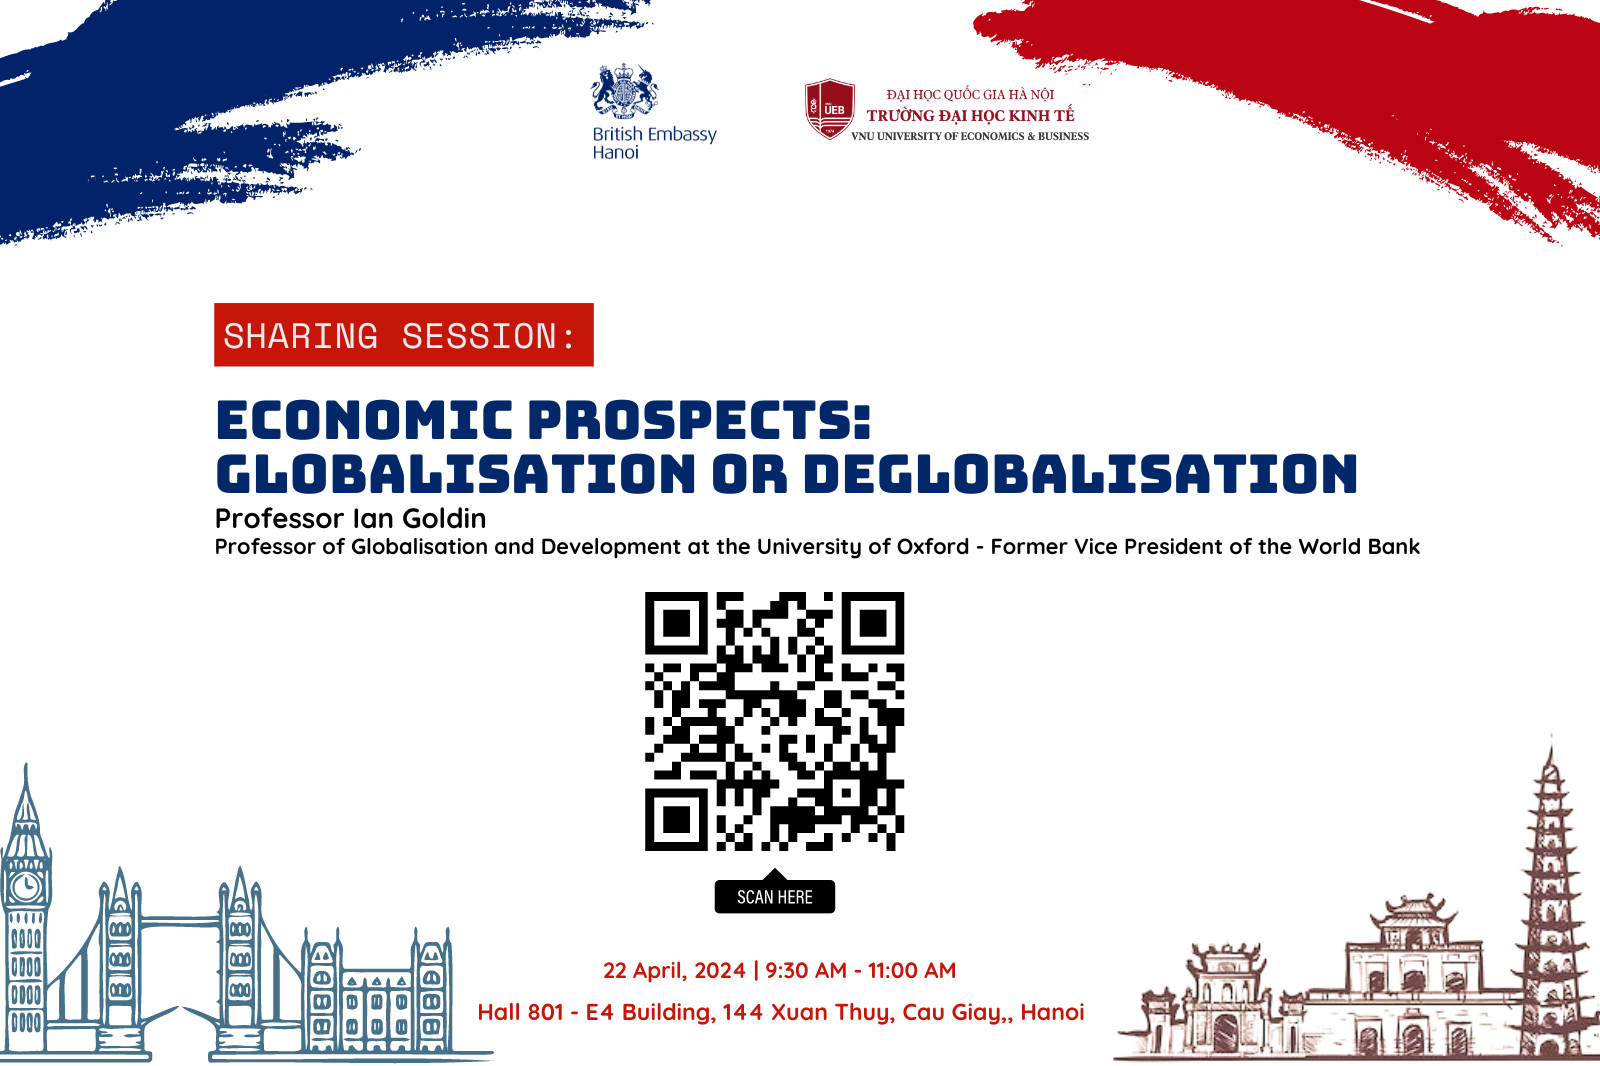 Buổi chia sẻ của Nguyên Phó chủ tịch World Bank - Giáo sư Ian Goldin về chủ đề "Economic prospects: globalisation or deglobalisation"